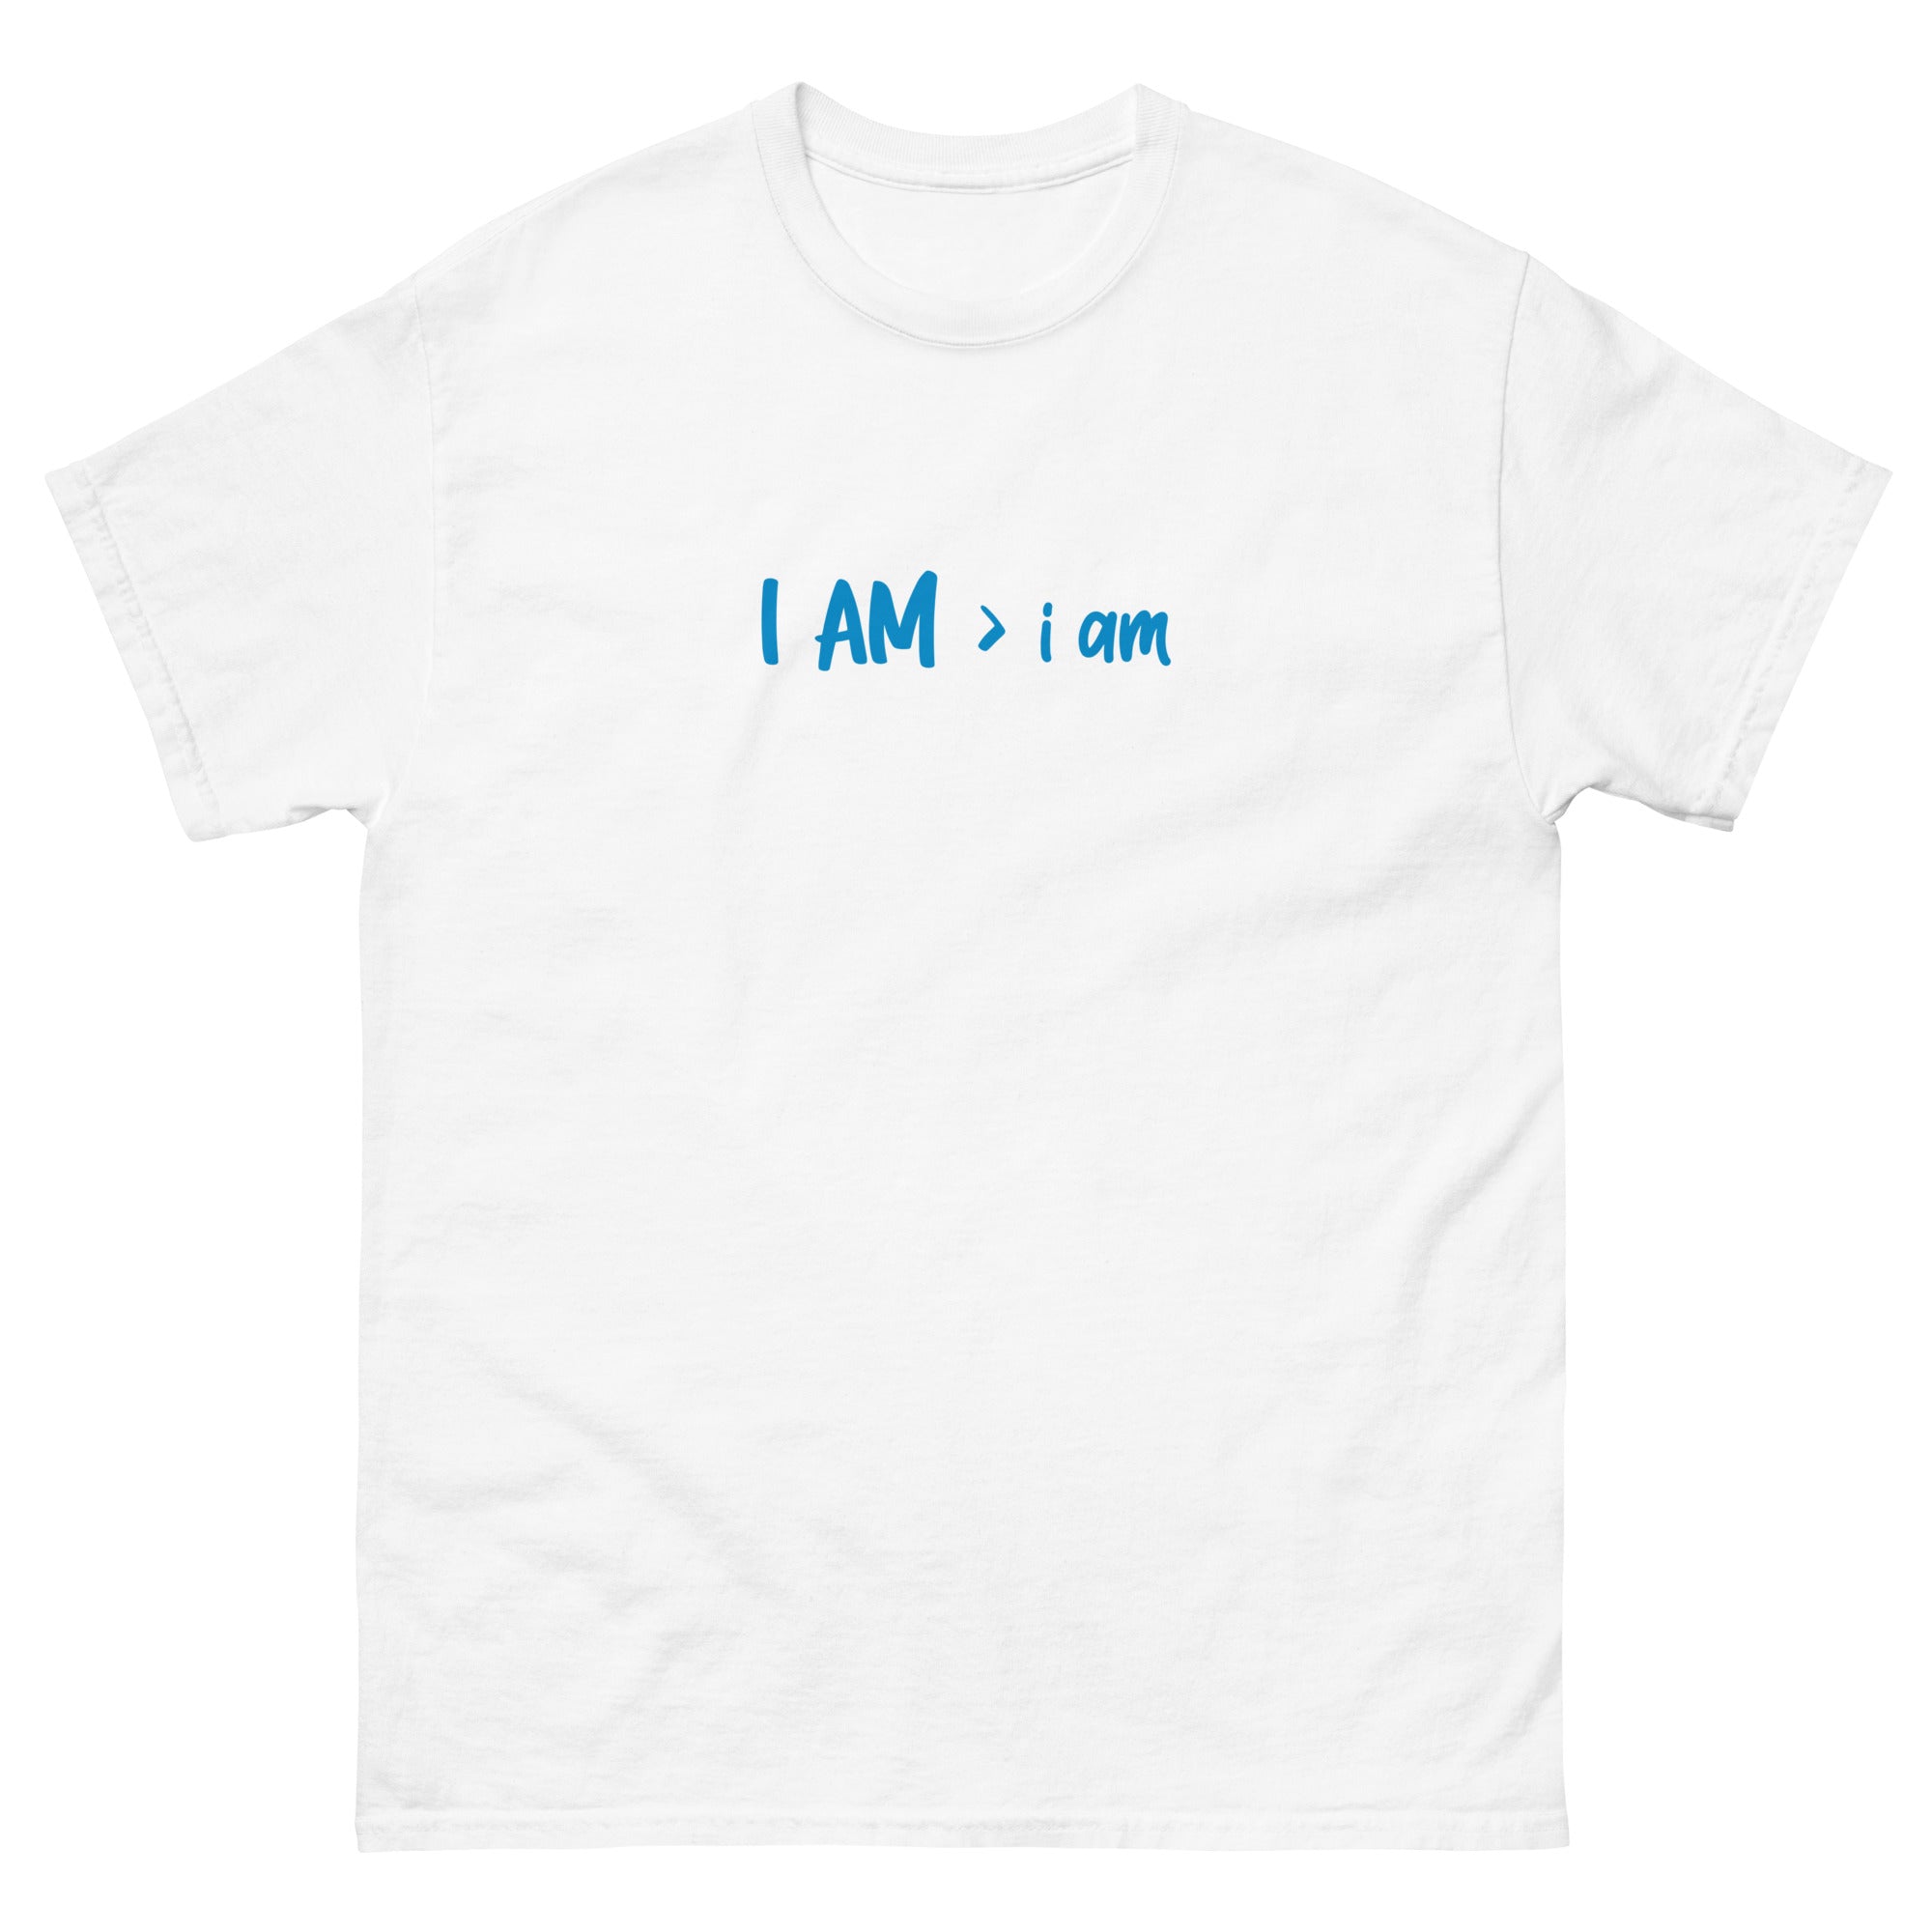 I AM > i am (blue image)